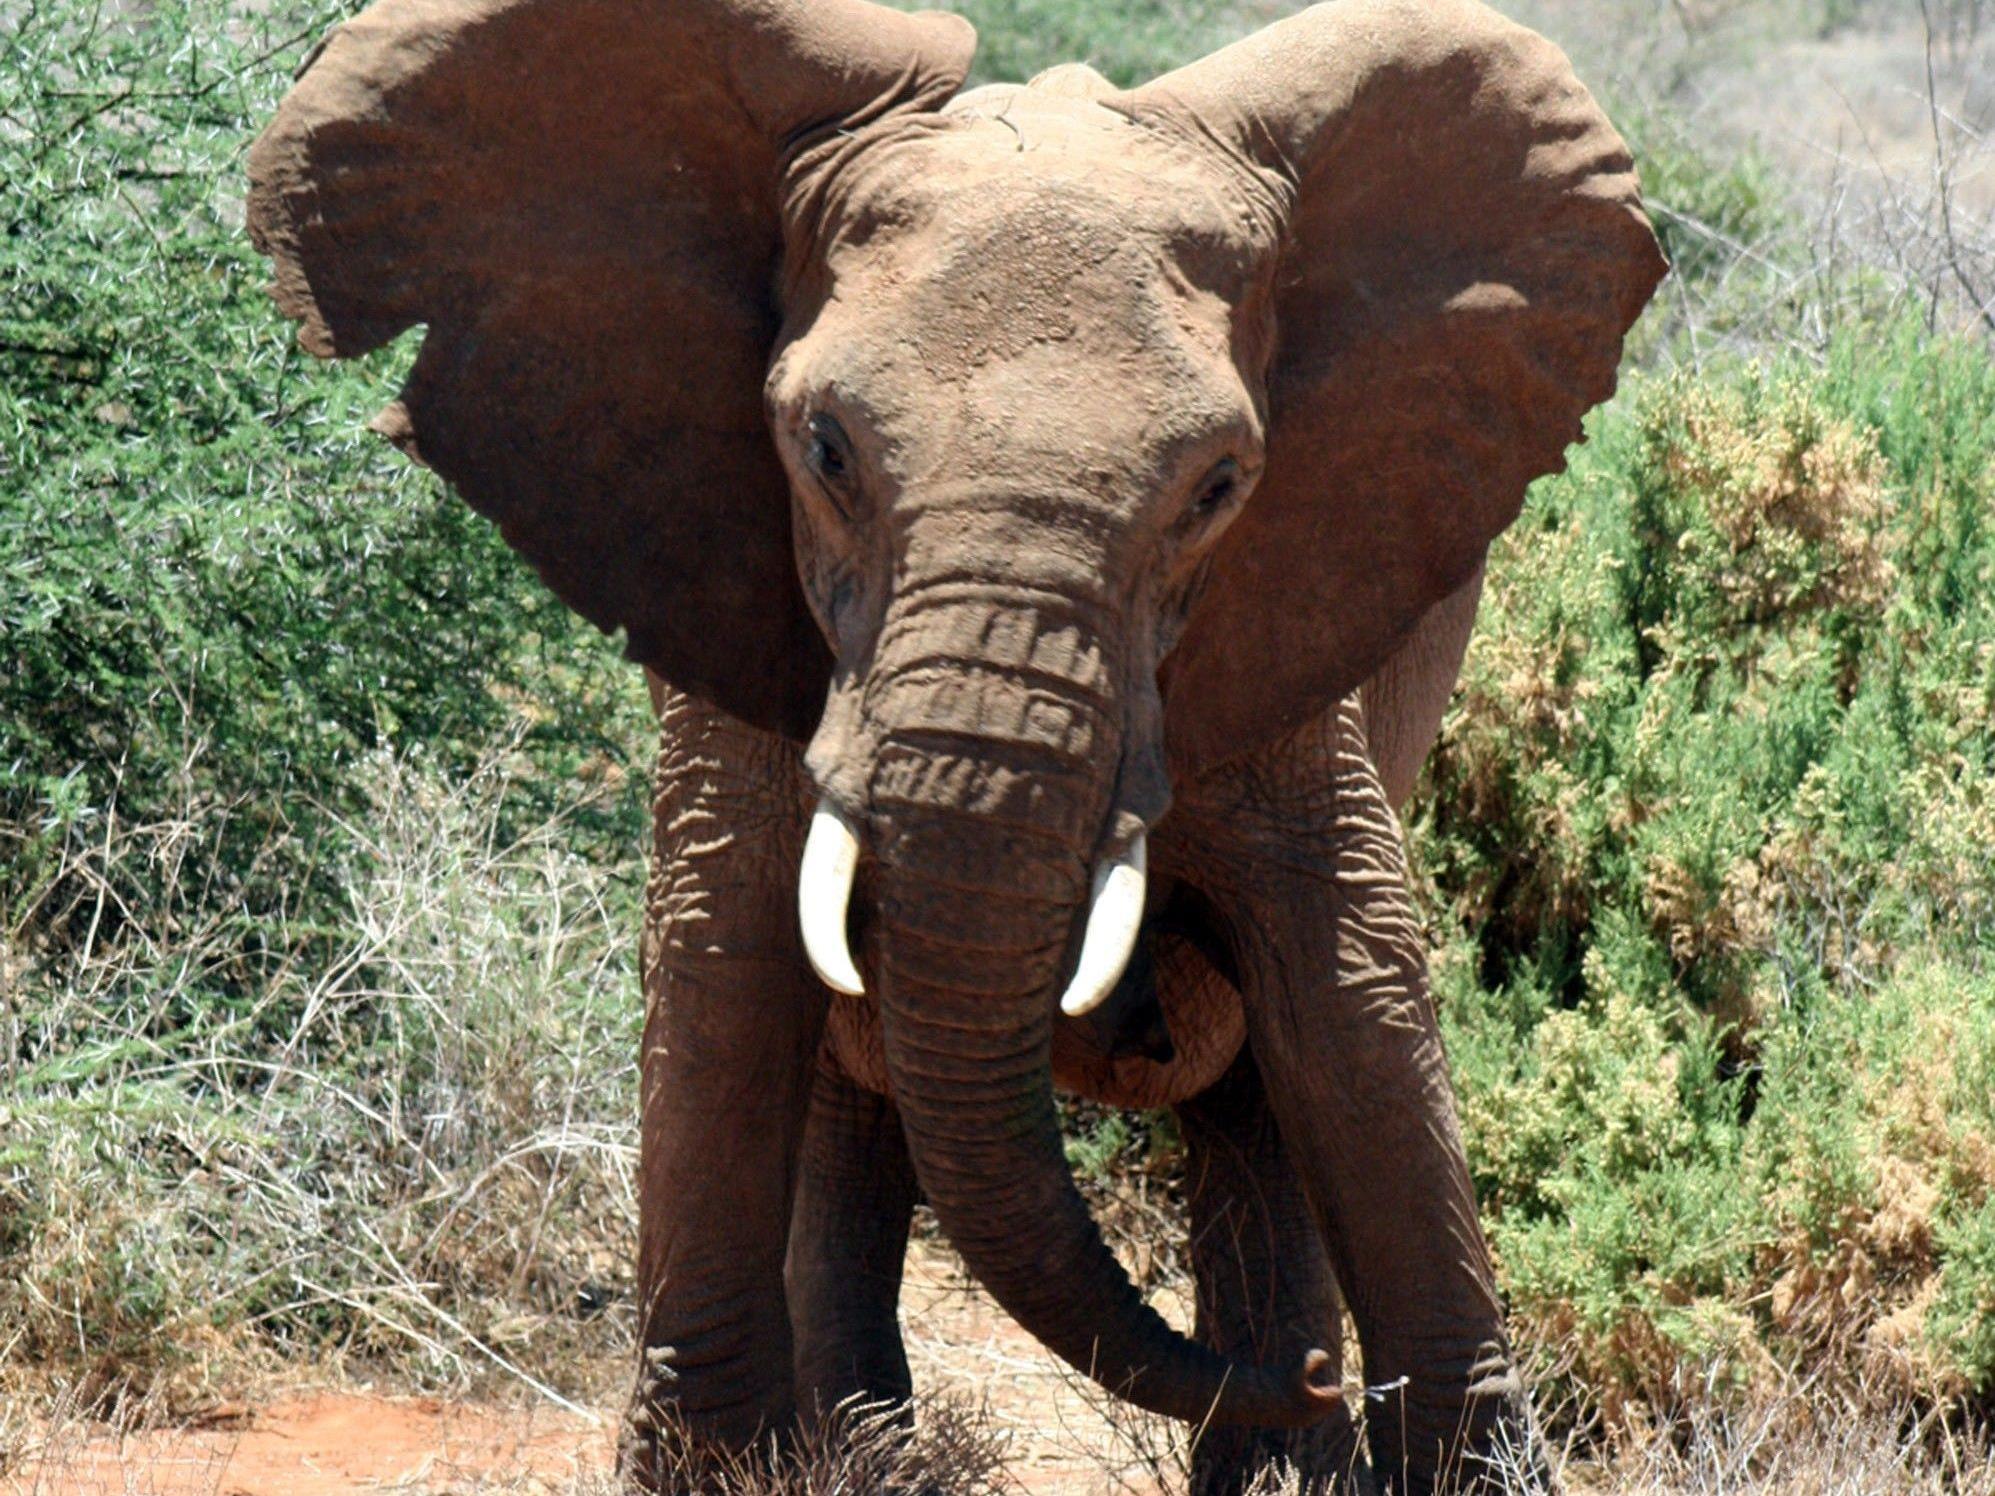 Elefanten nehmen schon beim ersten Summen Reißaus.